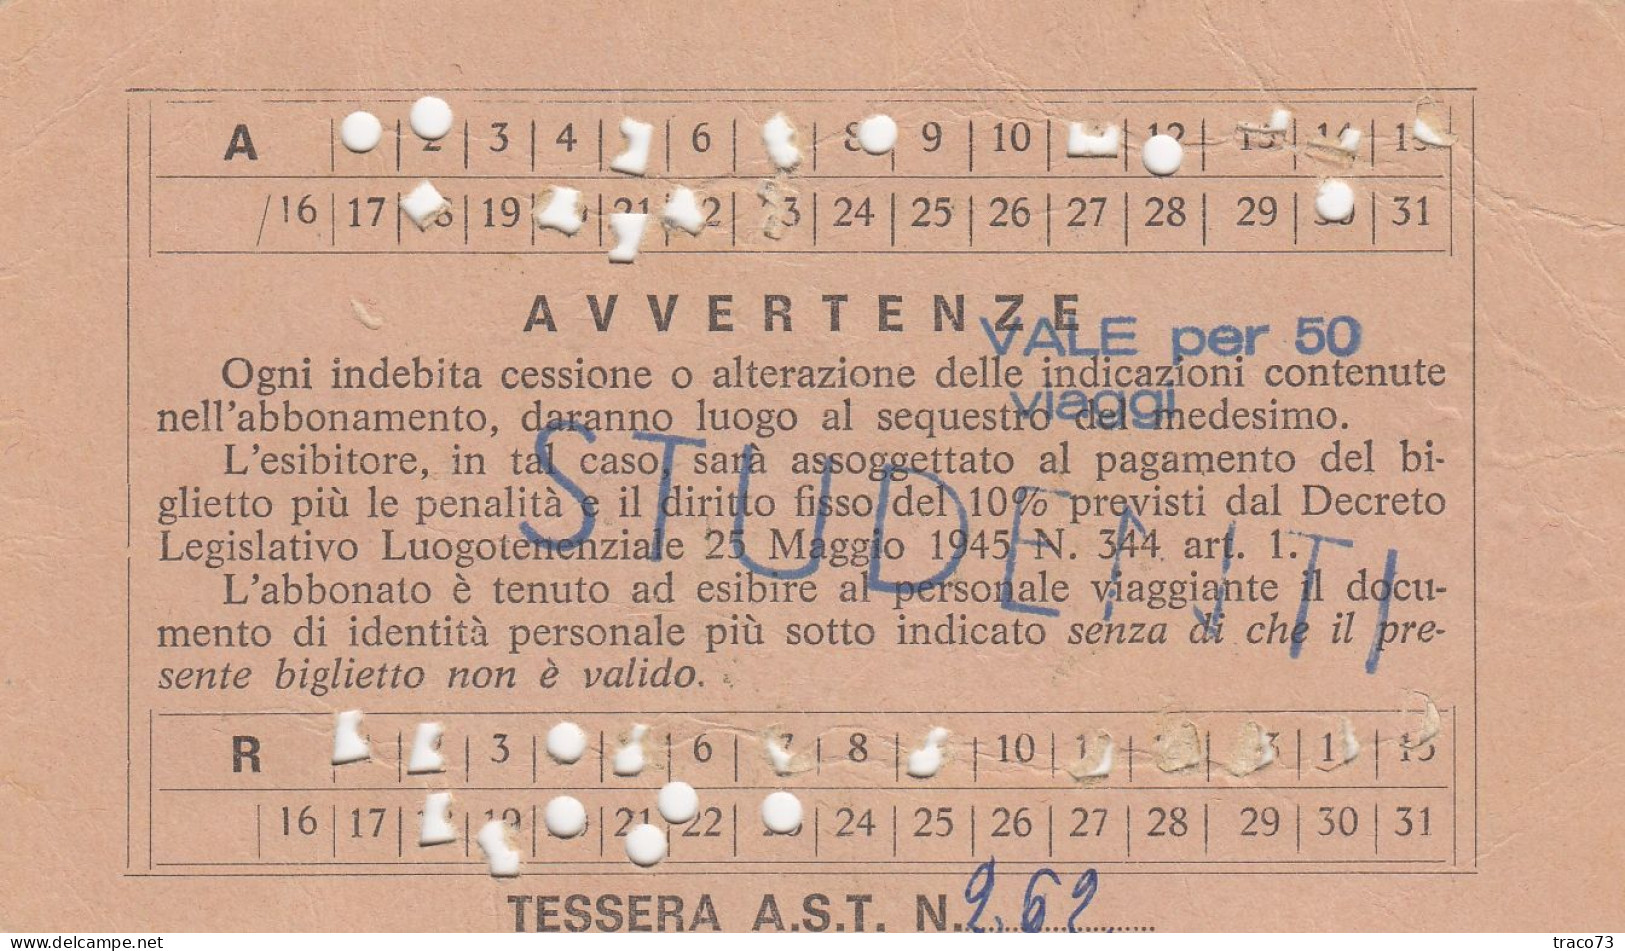 AZIENDA SICILIANA TRASPORTI / Autolinee Della Sicilia - Abbonamento Speciale _S. Flavia-Bagheria E Viceversa_ Dic. 1979 - Europe